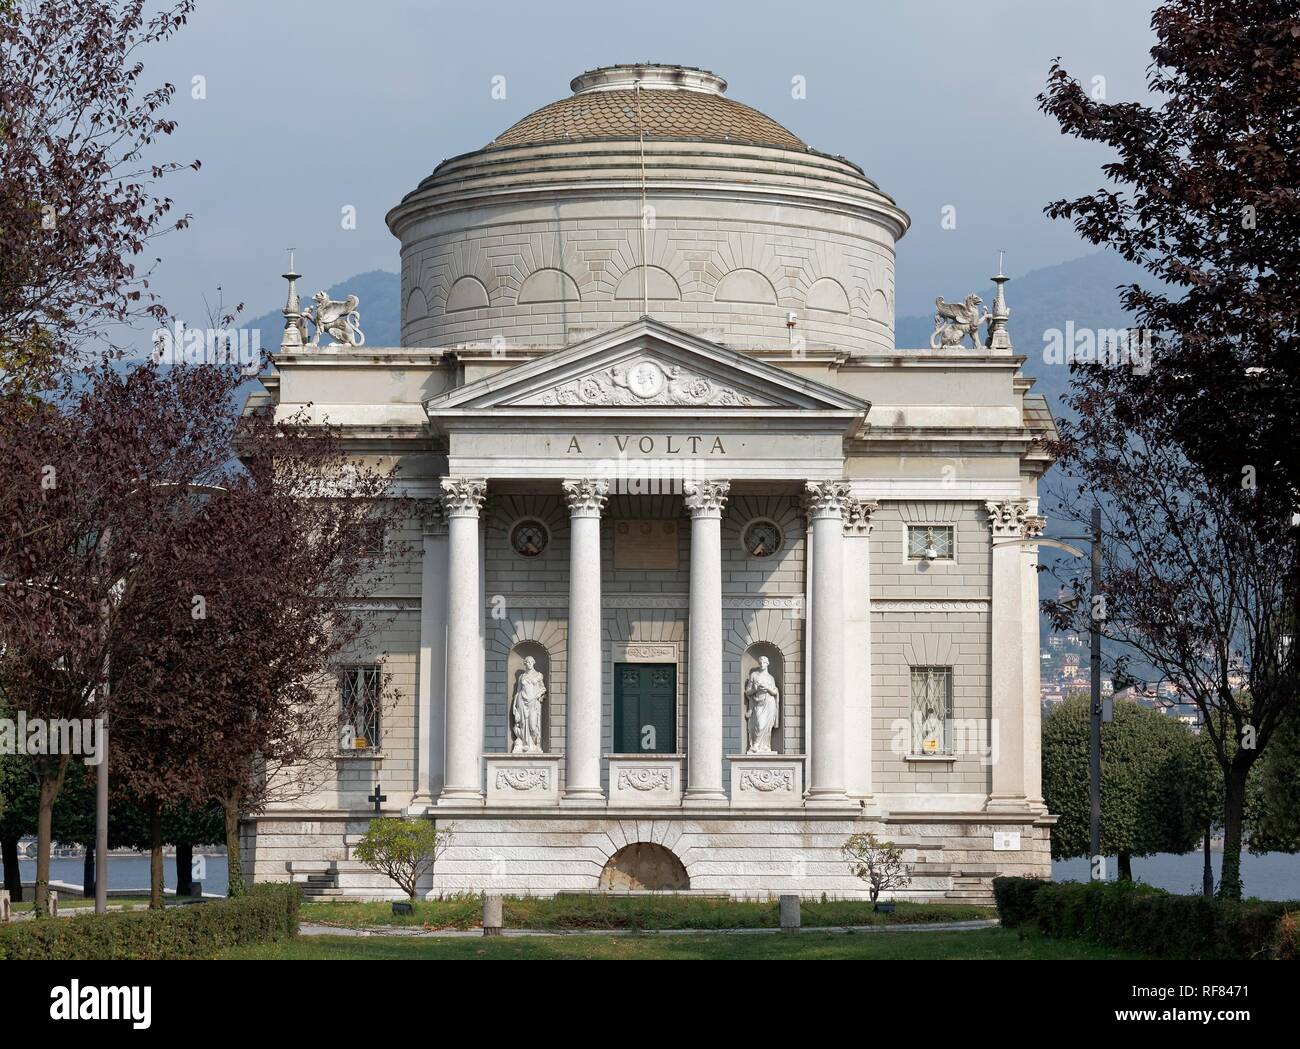 Tempio Voltiano, Musée de la Volta, Côme, Lombardie, Italie Banque D'Images